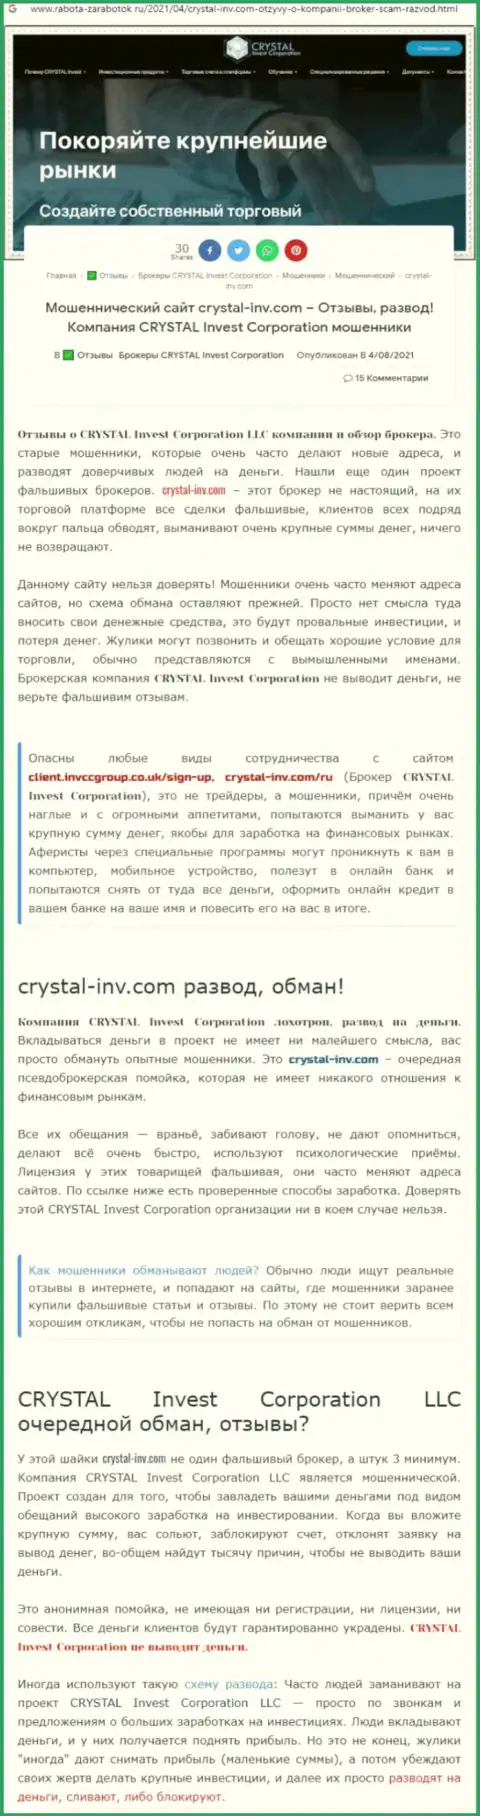 Материал, выводящий на чистую воду контору Crystal Invest Corporation, позаимствованный с web-сайта с обзорами мошеннических комбинаций разных организаций